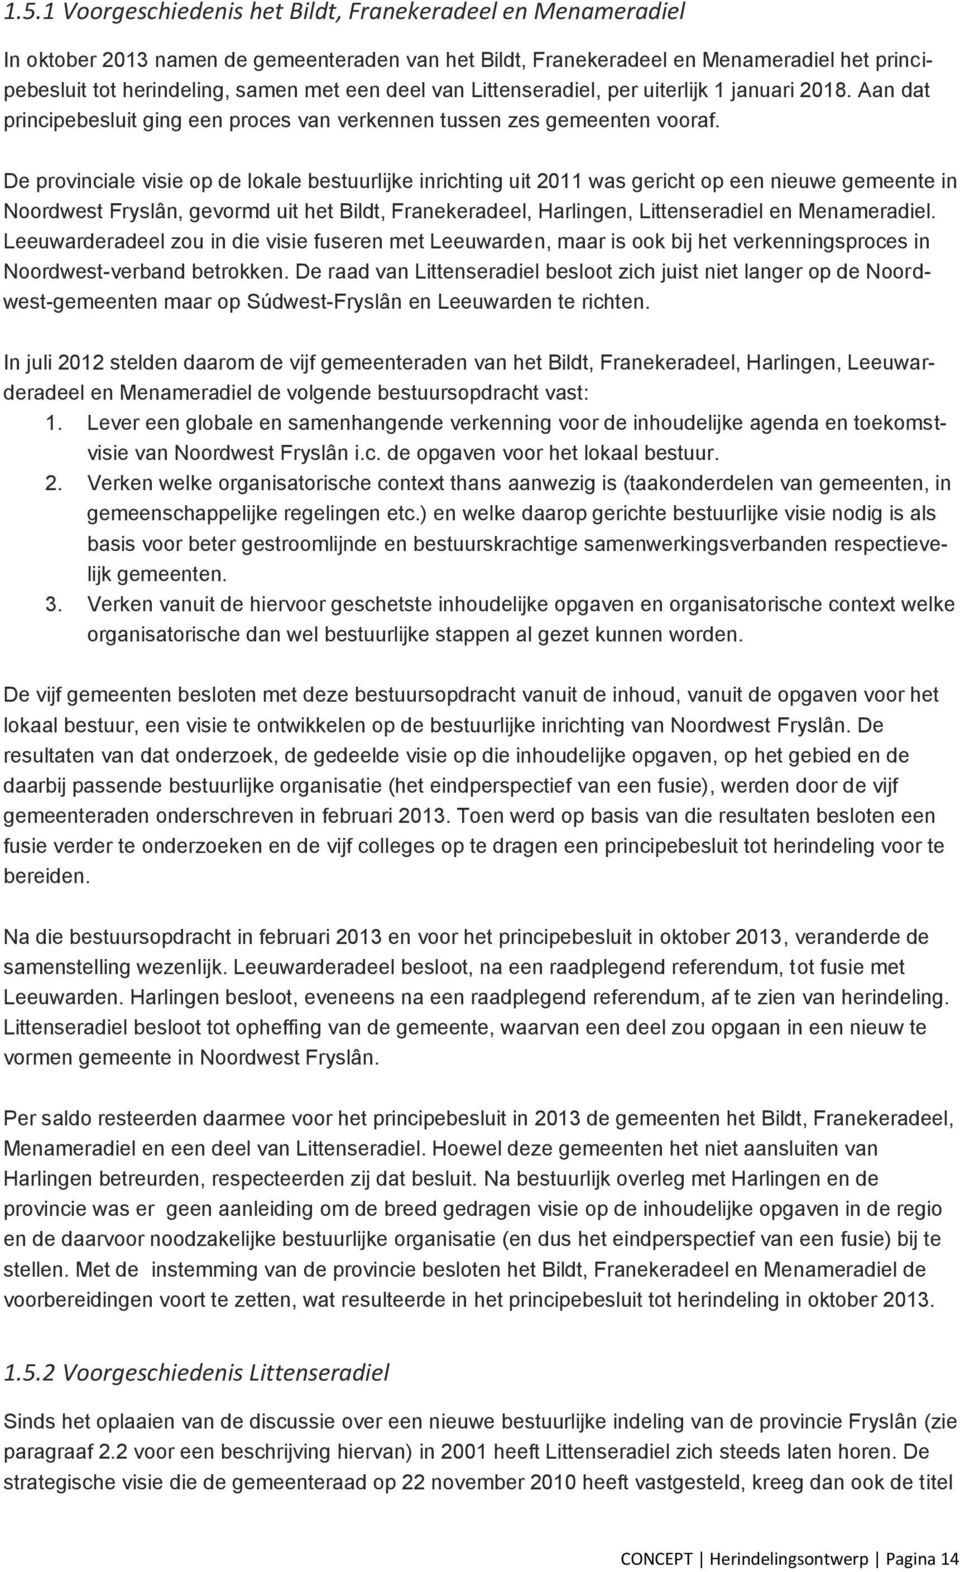 De provinciale visie op de lokale bestuurlijke inrichting uit 2011 was gericht op een nieuwe gemeente in Noordwest Fryslân, gevormd uit het Bildt, Franekeradeel, Harlingen, Littenseradiel en